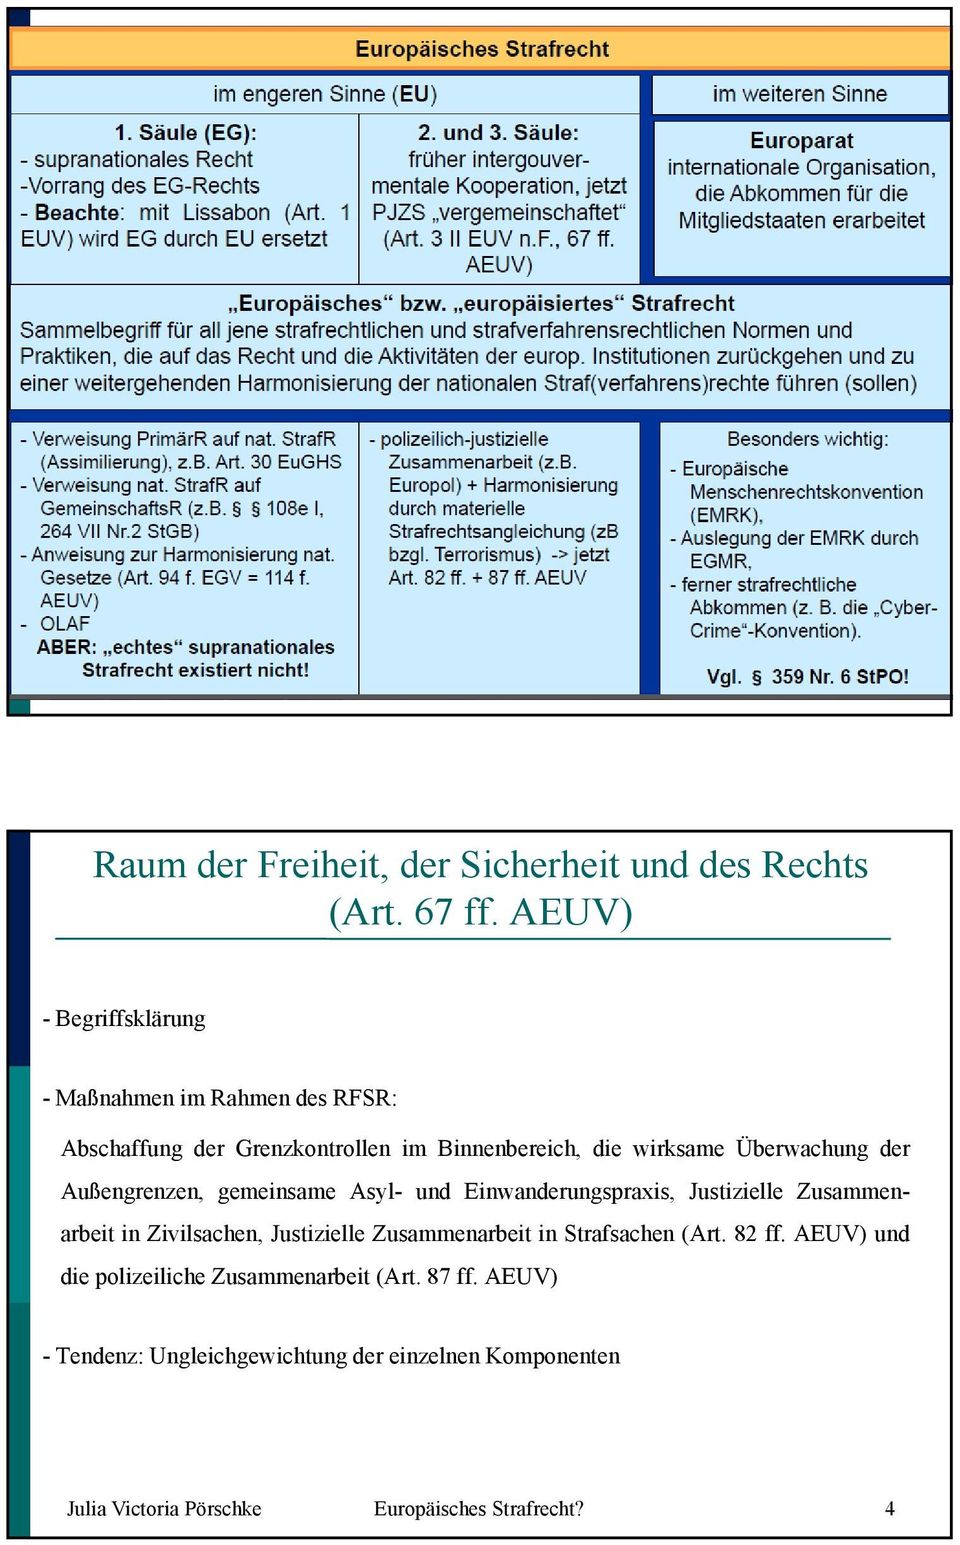 AEUV) - Begriffsklärung - Maßnahmen im Rahmen des RFSR: Abschaffung der Grenzkontrollen im Binnenbereich, die wirksame Überwachung der Außengrenzen, gemeinsame Asyl- und